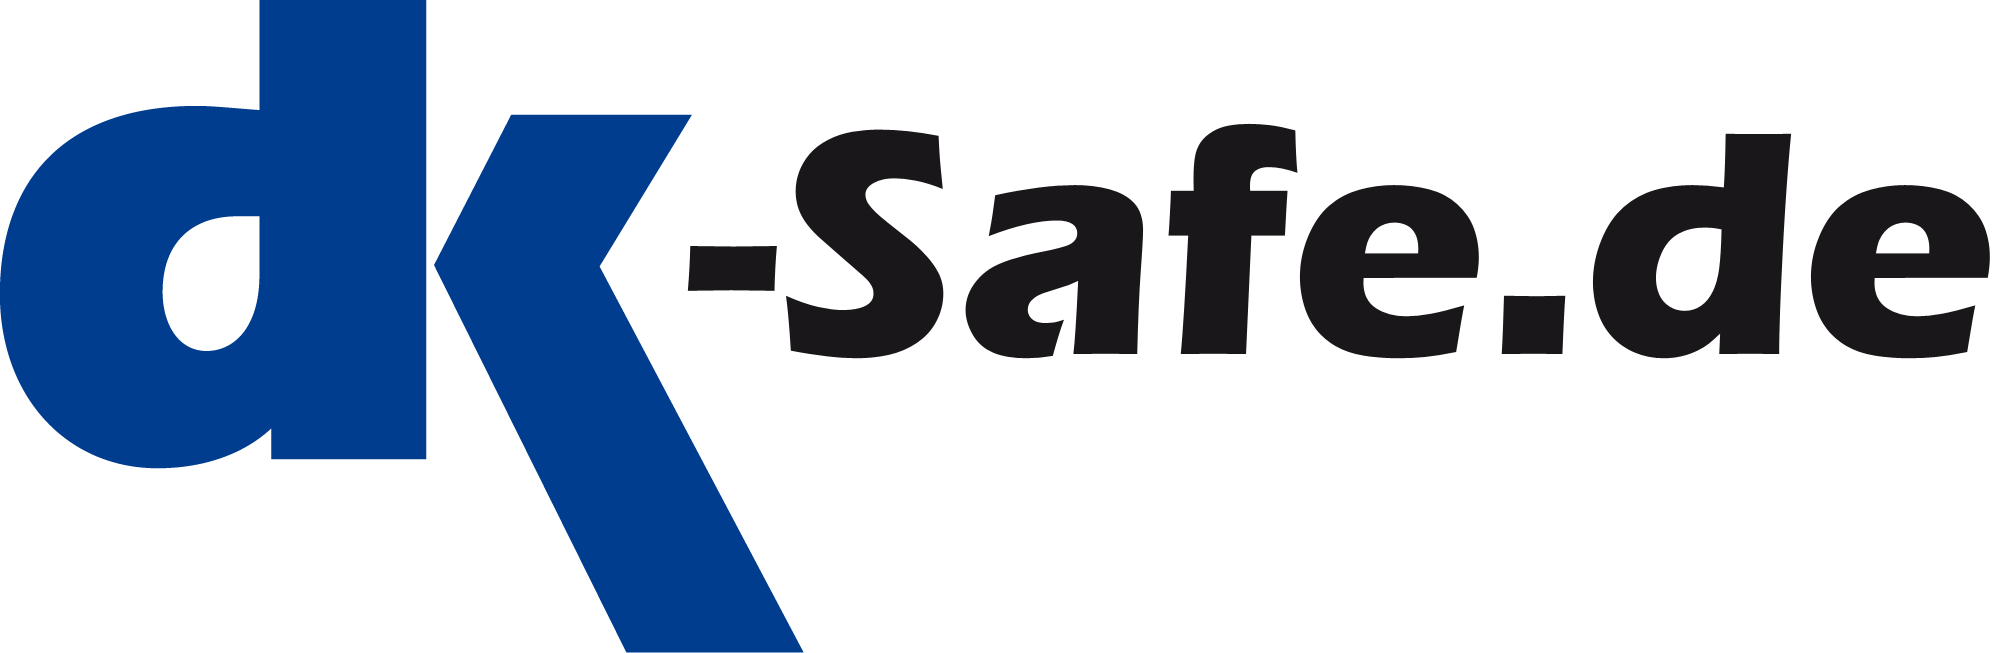 DK-Safe